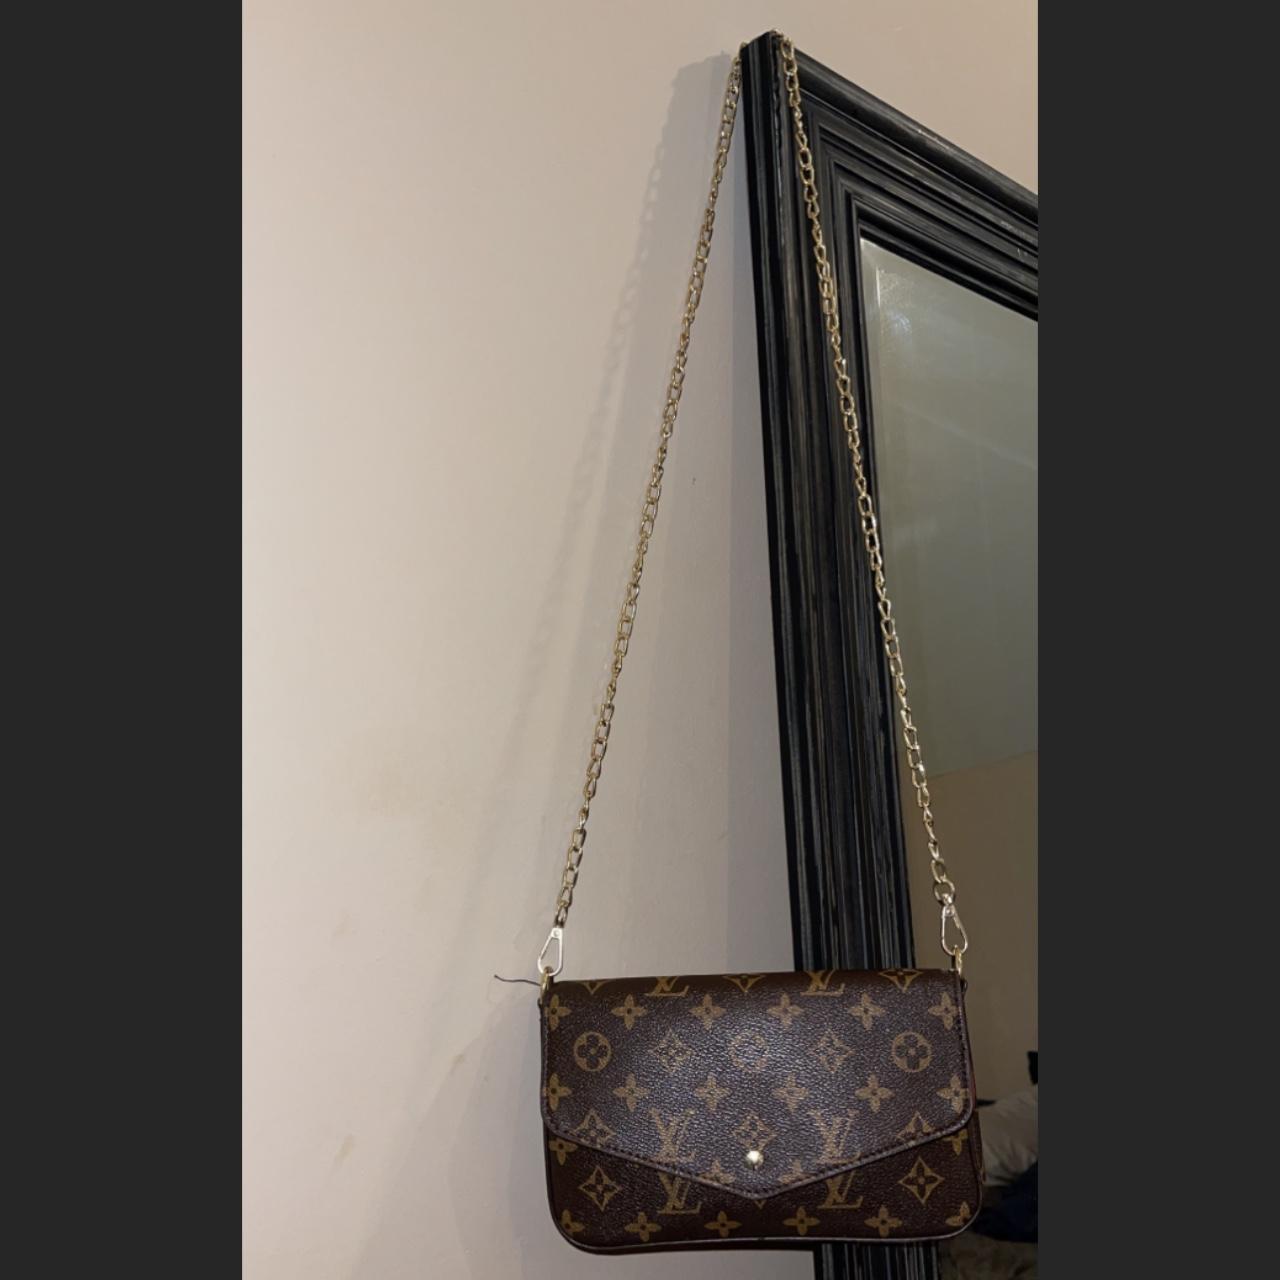 Louis Vuitton maida hobo bag Got as a gift but never - Depop